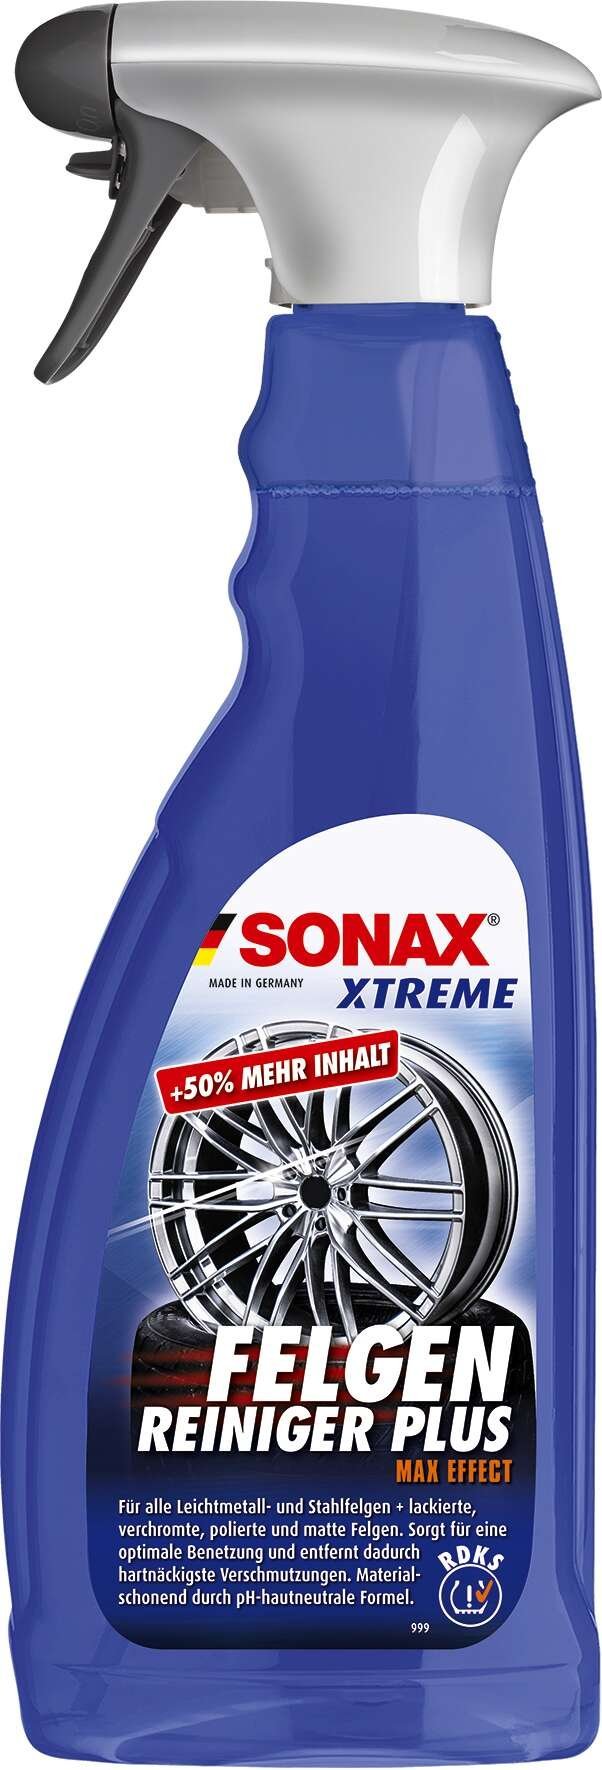 SONAX XTREME Nettoyant Jantes PET Vaporisateur 750 ml Plus